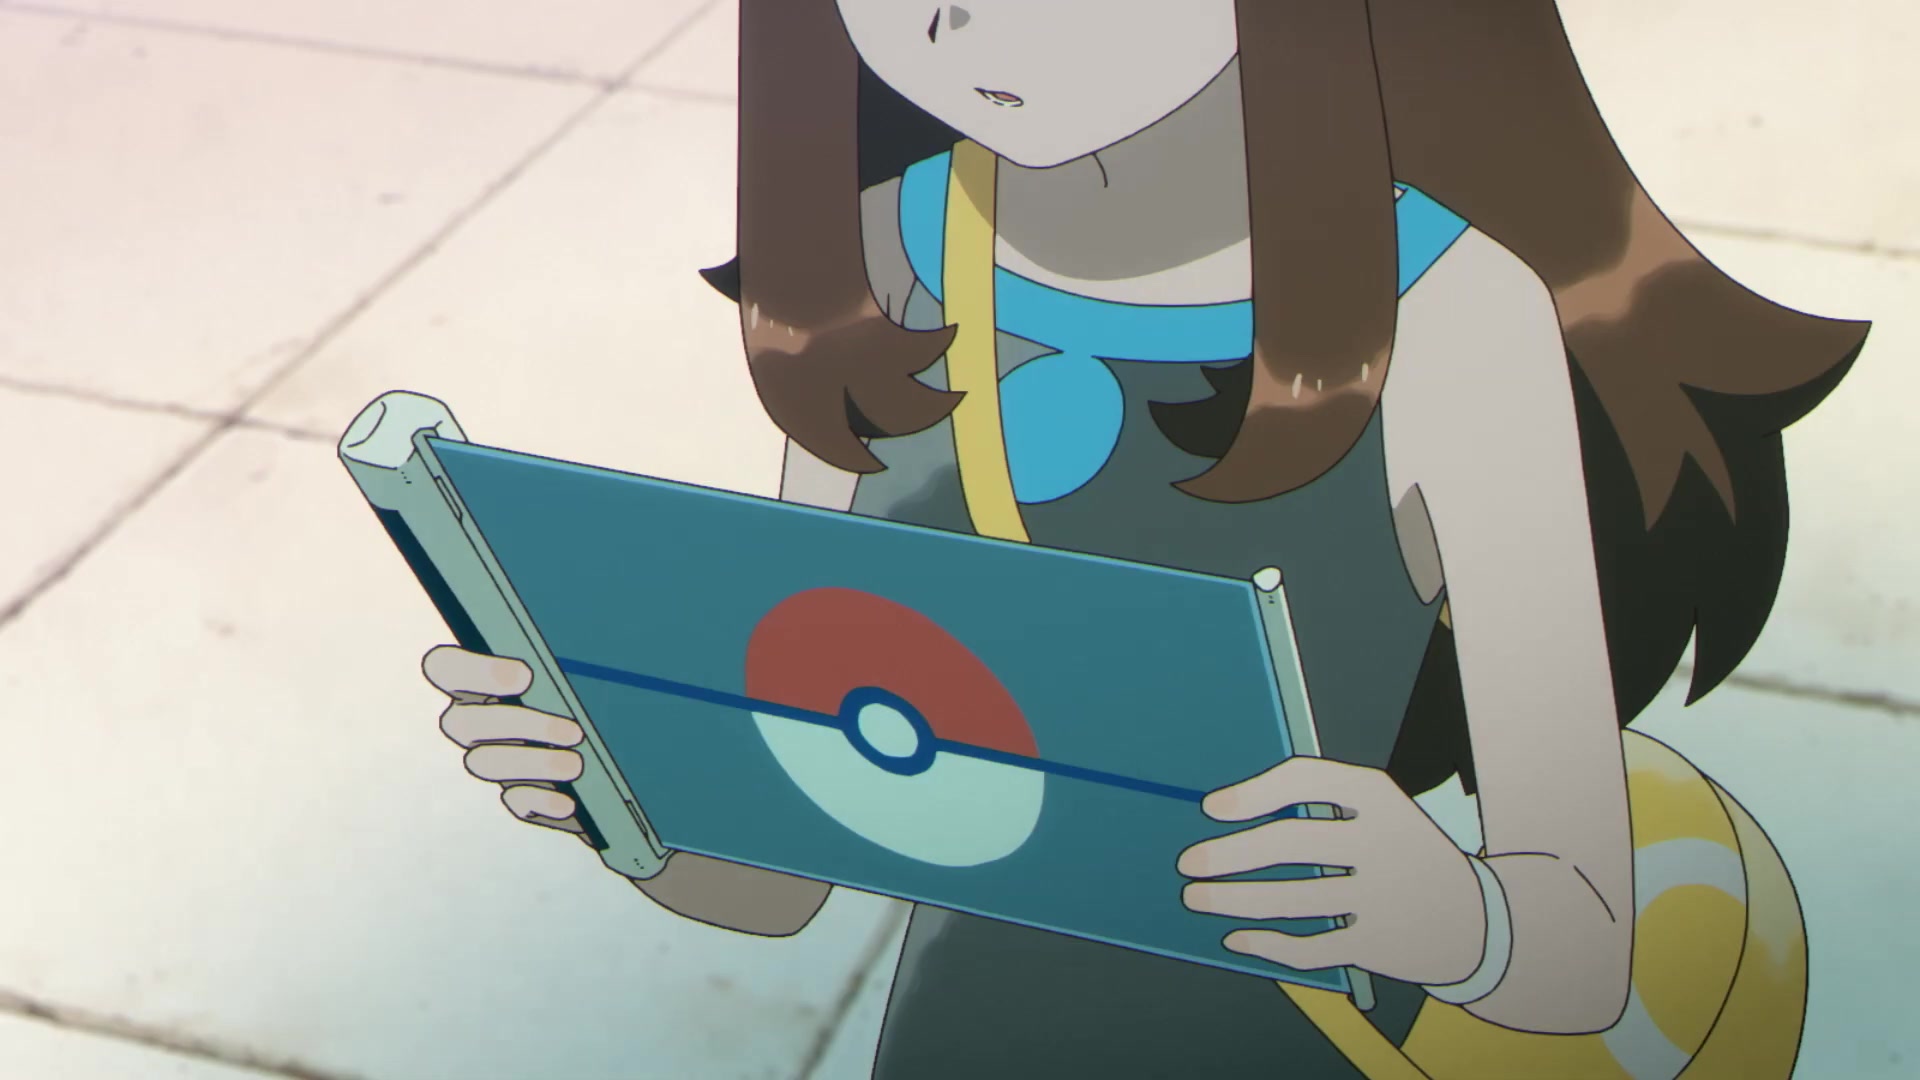 Evoluciones Pokémon EP8: El descubrimiento (Kanto) Verde observa el mapa